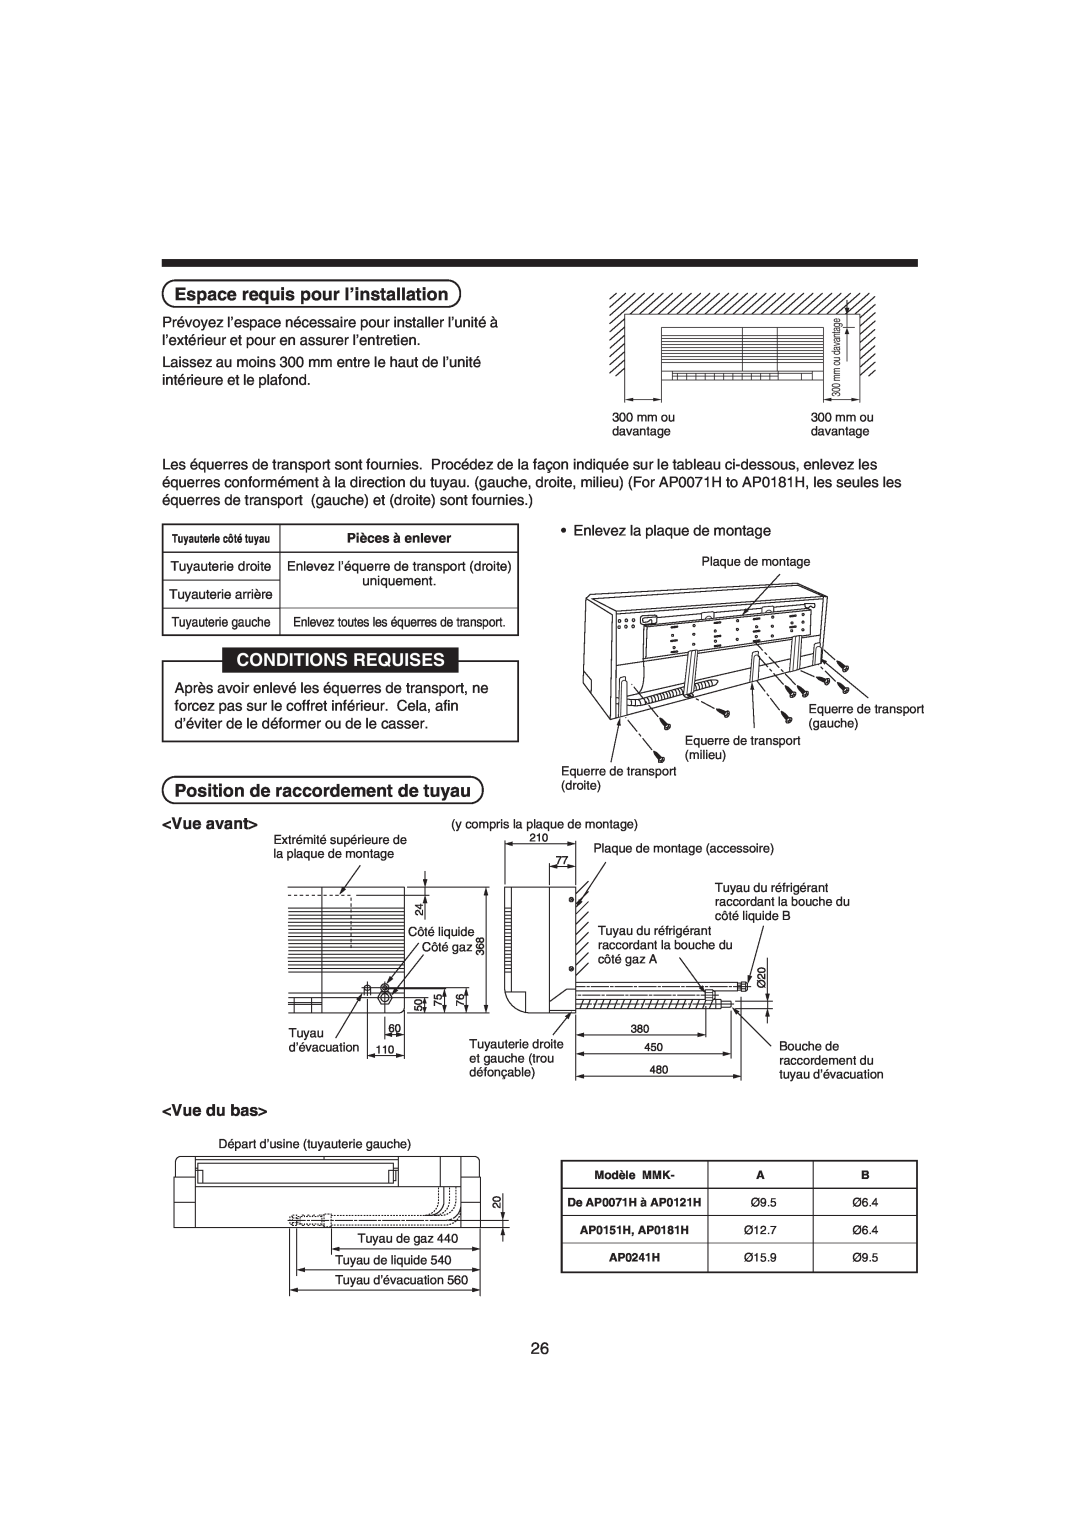 Pentax MMK-AP0071H Espace requis pour l’installation, Conditions Requises, Position de raccordement de tuyau, <Vue avant> 